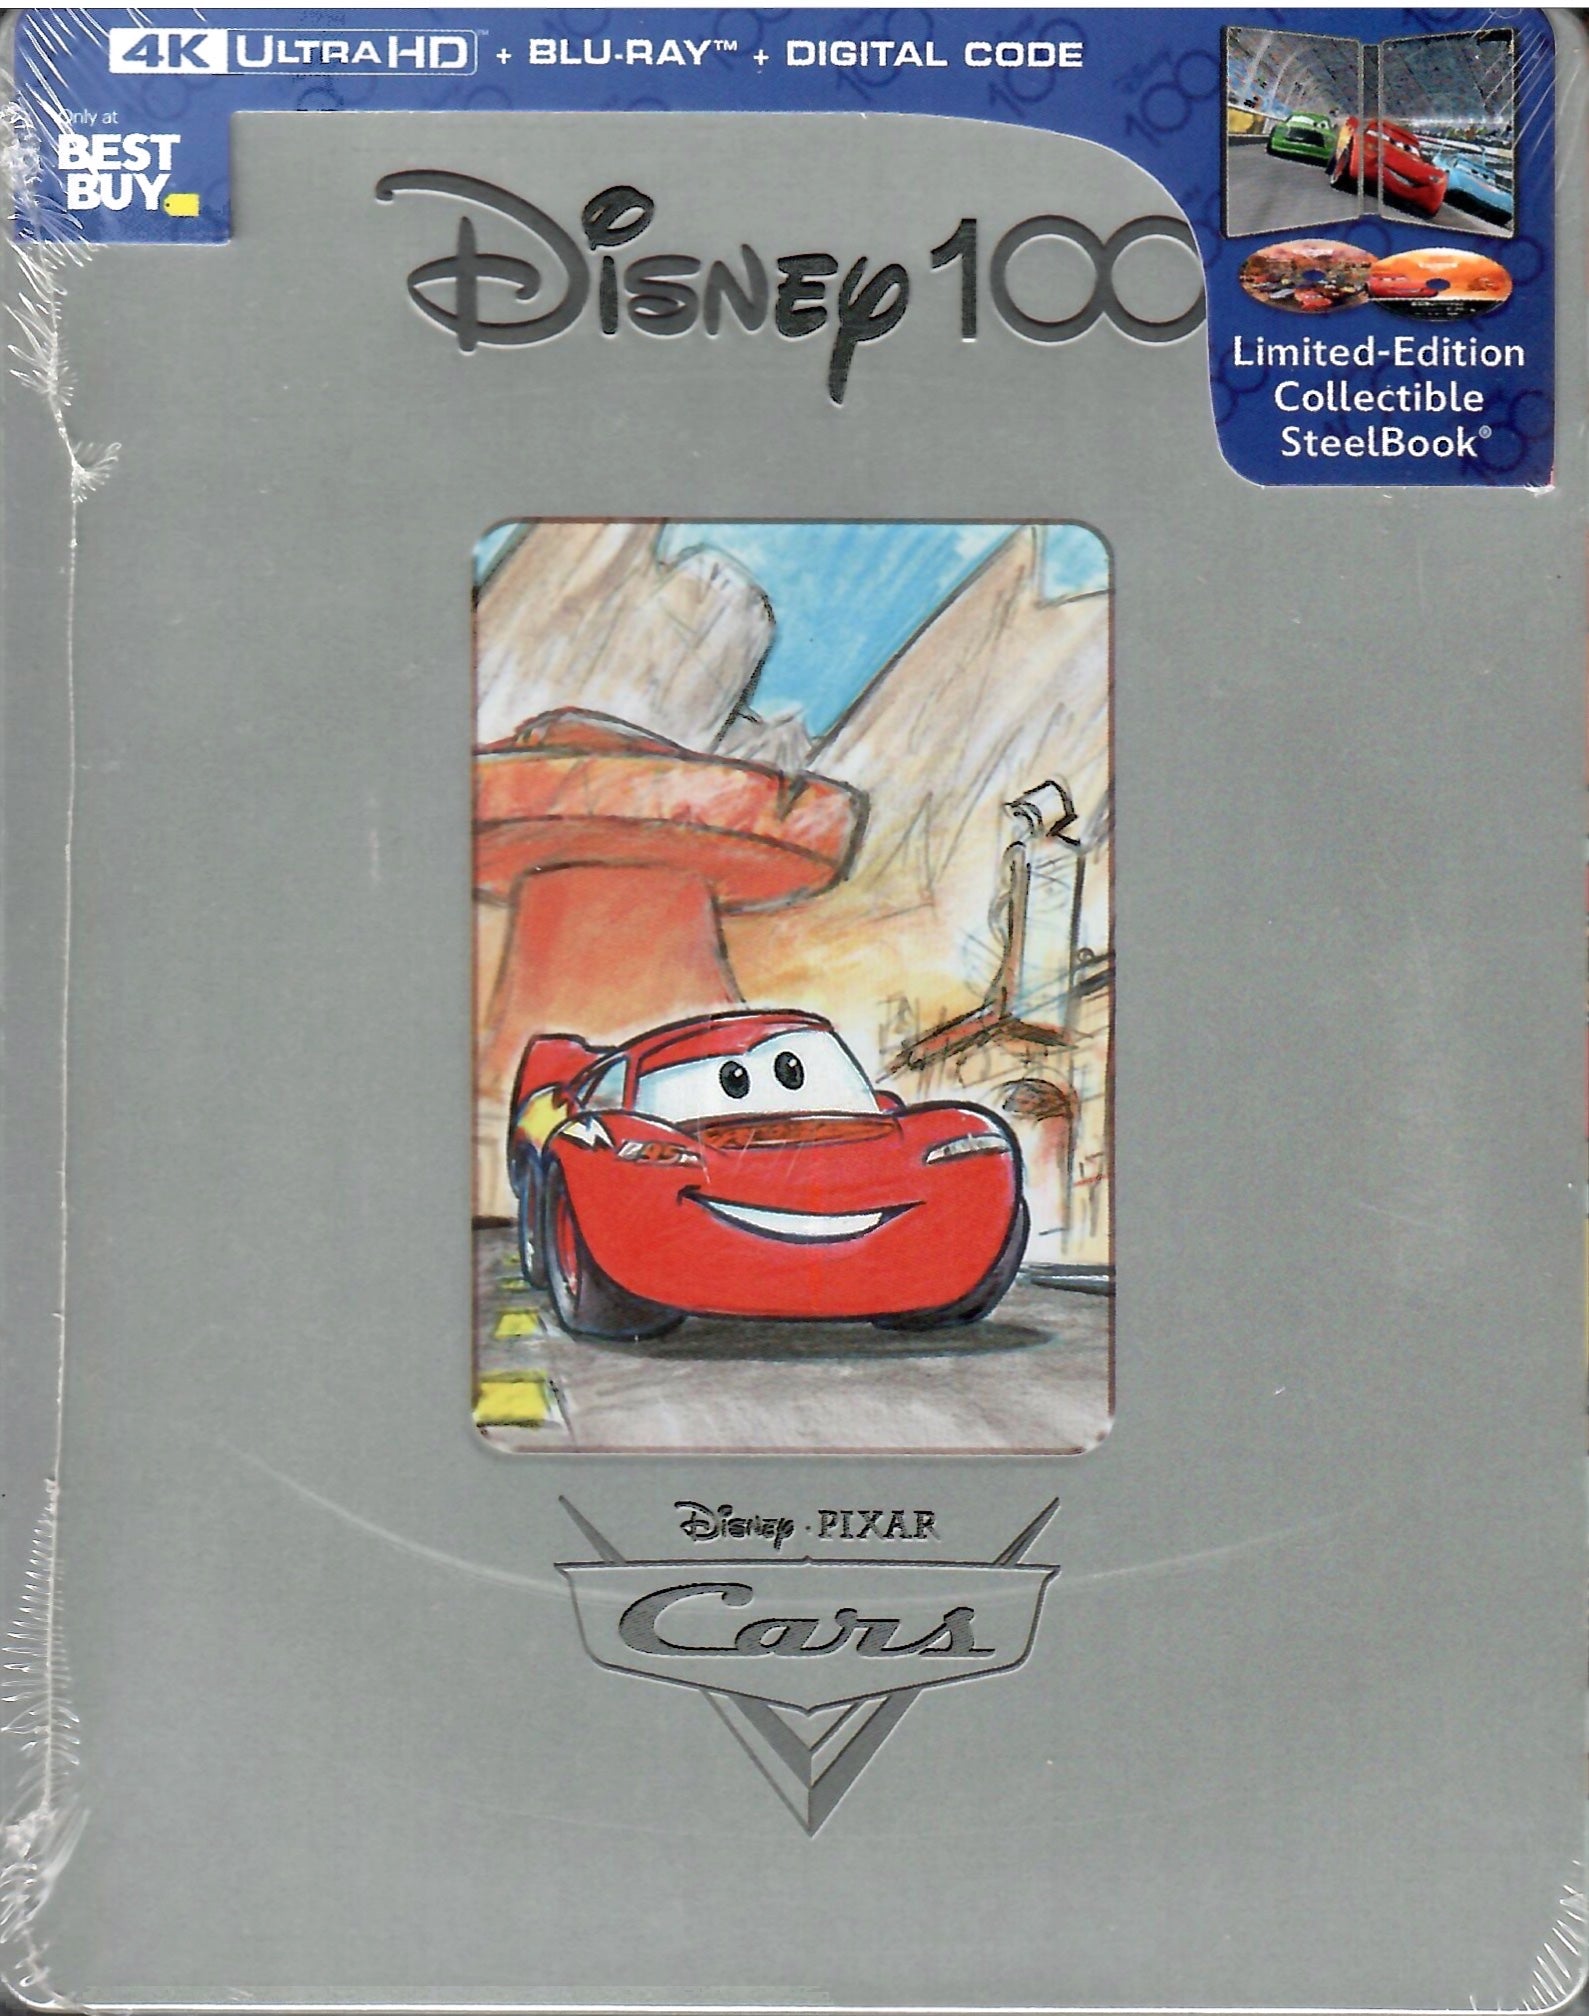 Disney Pixar Cars (DVD, 2006, Full Screen) Owen Wilson + slipcover